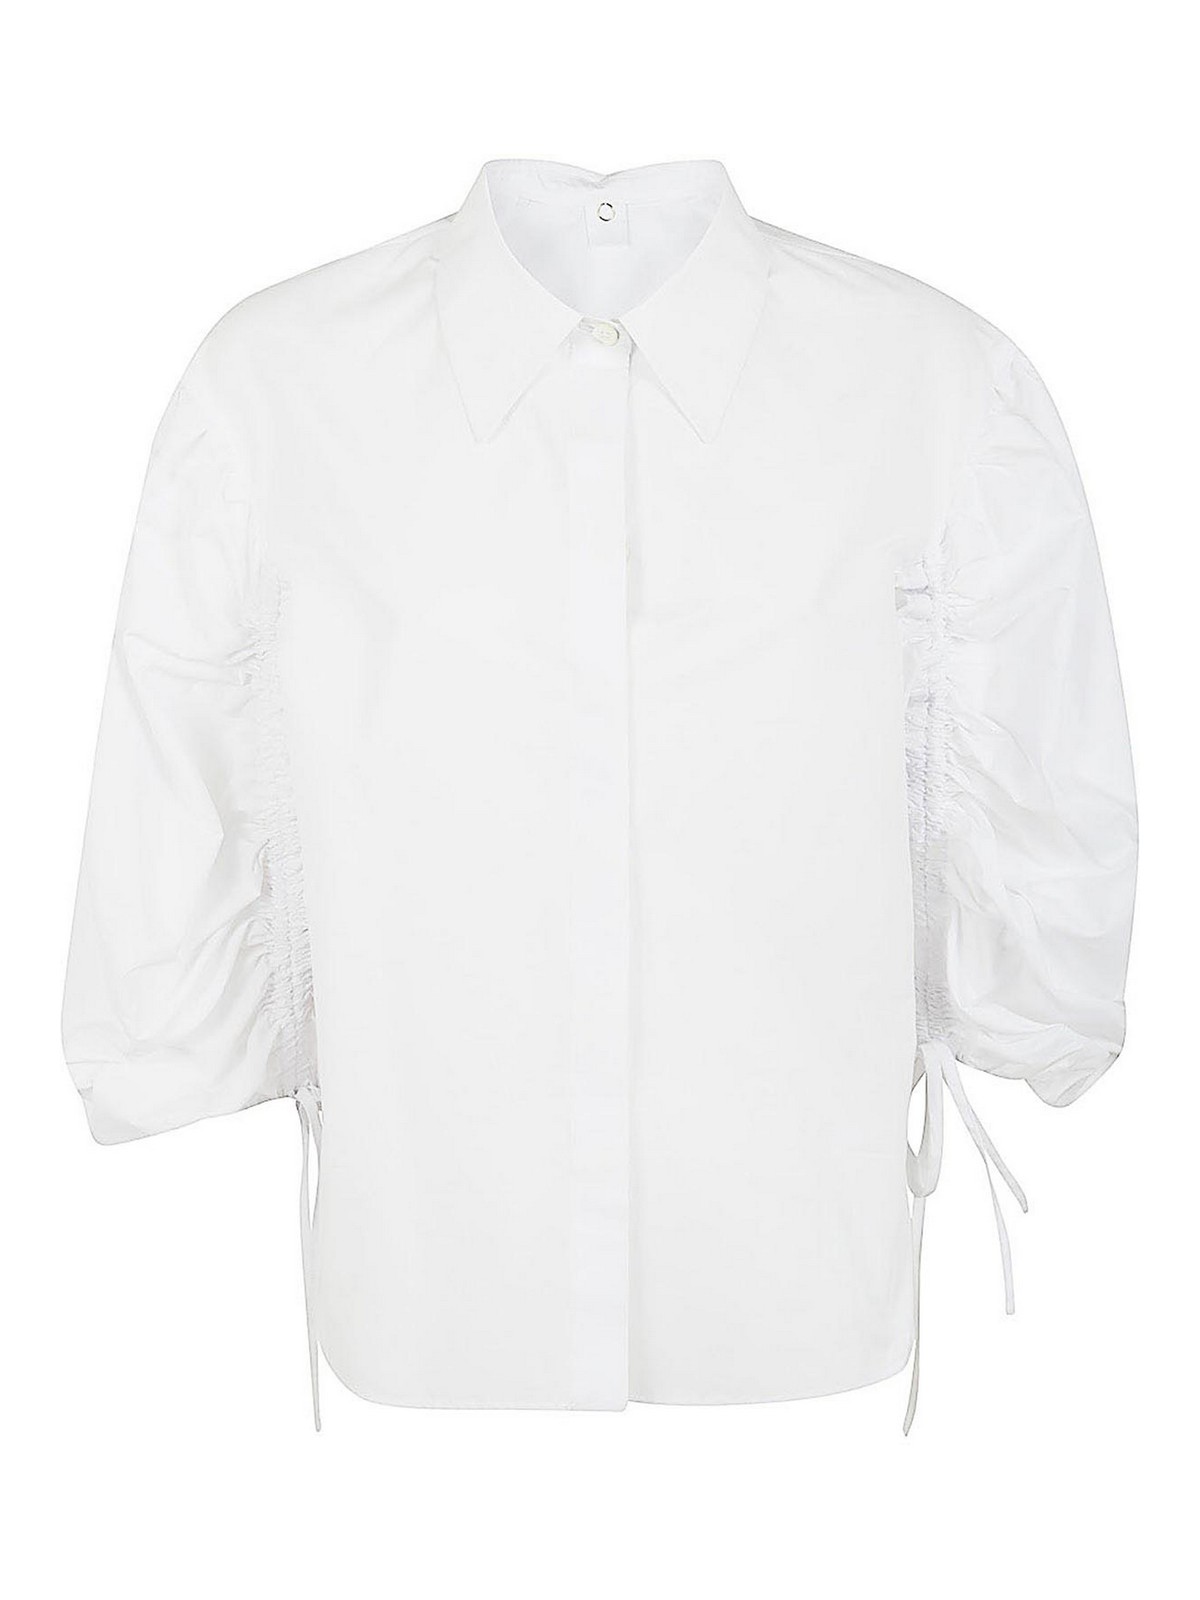 Mantu' Basic Shirt In White